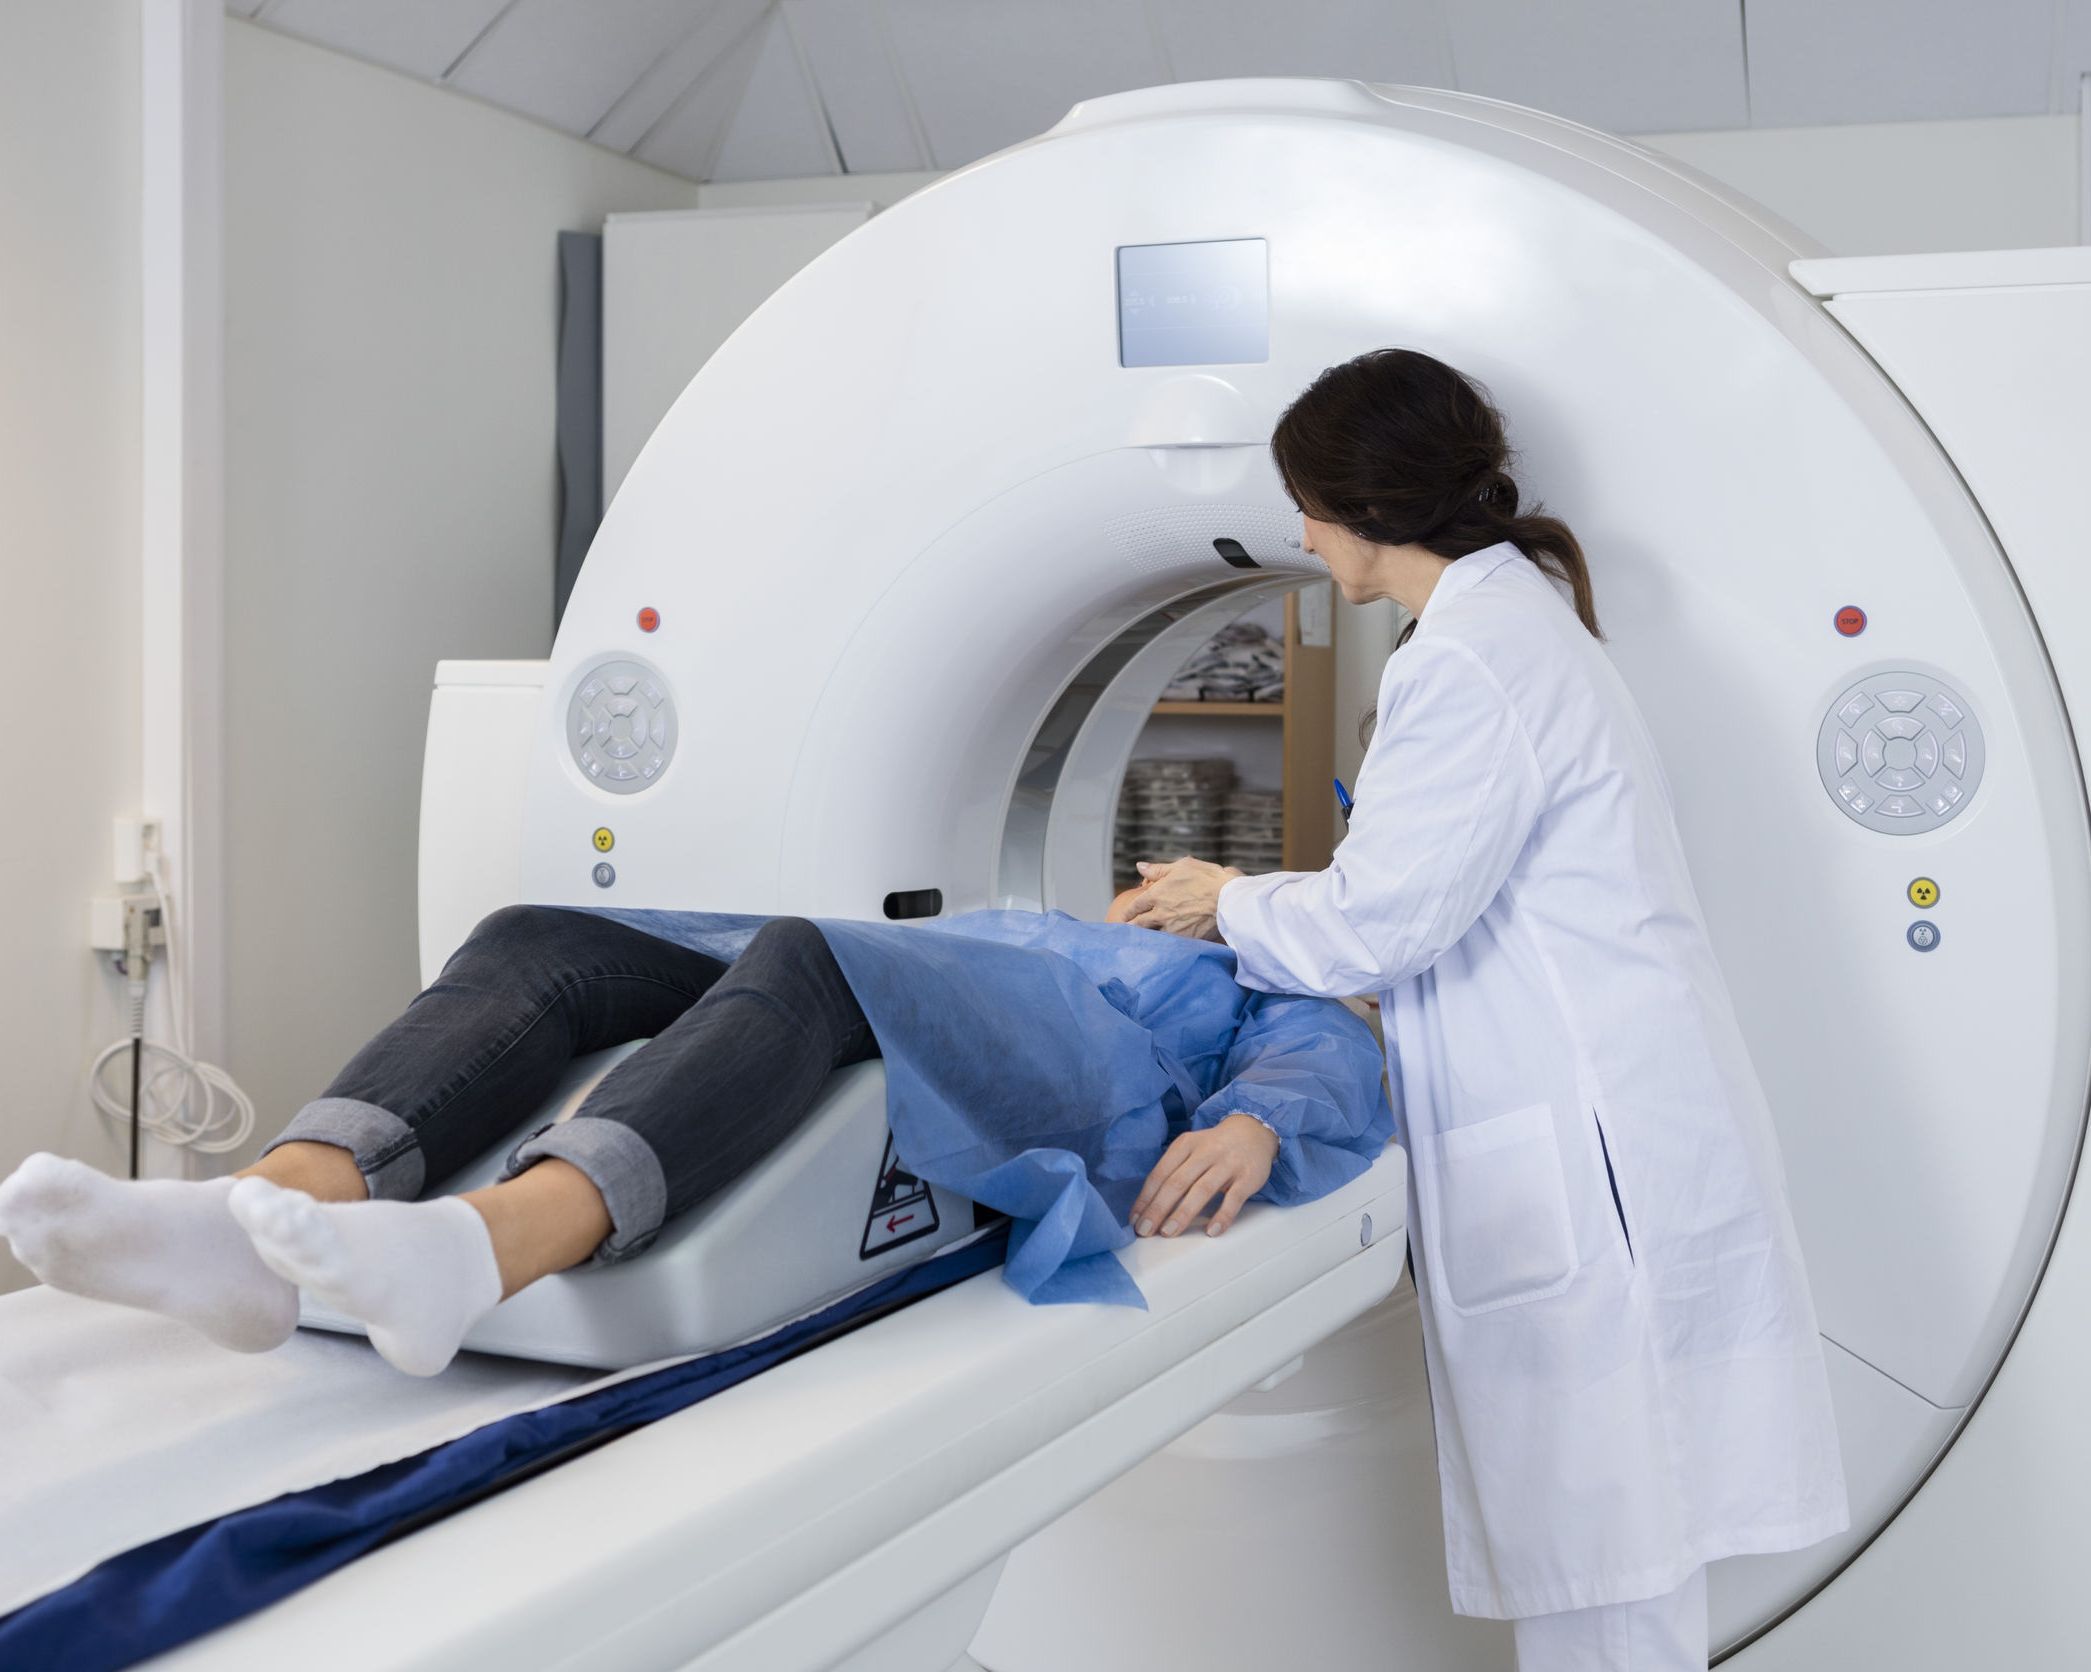 Cum functioneaza aparatul de rezonanta magnetica (IRM) si ce afectiuni poate depista? | VIDEO